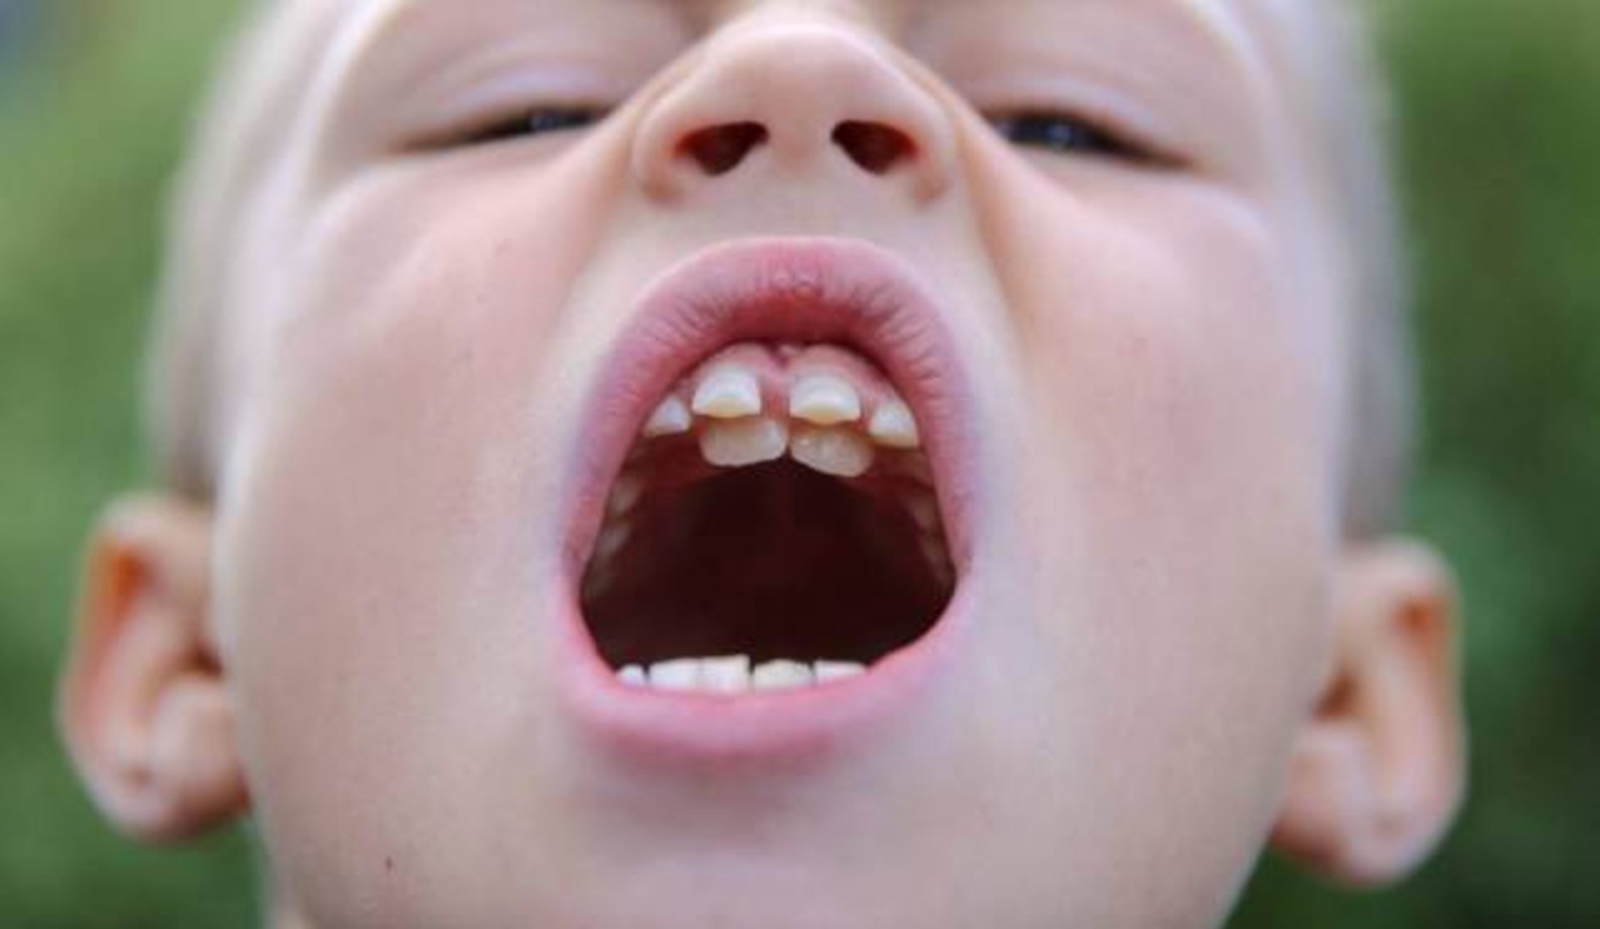  Răng hàm dưới mọc lệch ra ngoài - Tìm hiểu về công dụng đặc biệt của răng mực